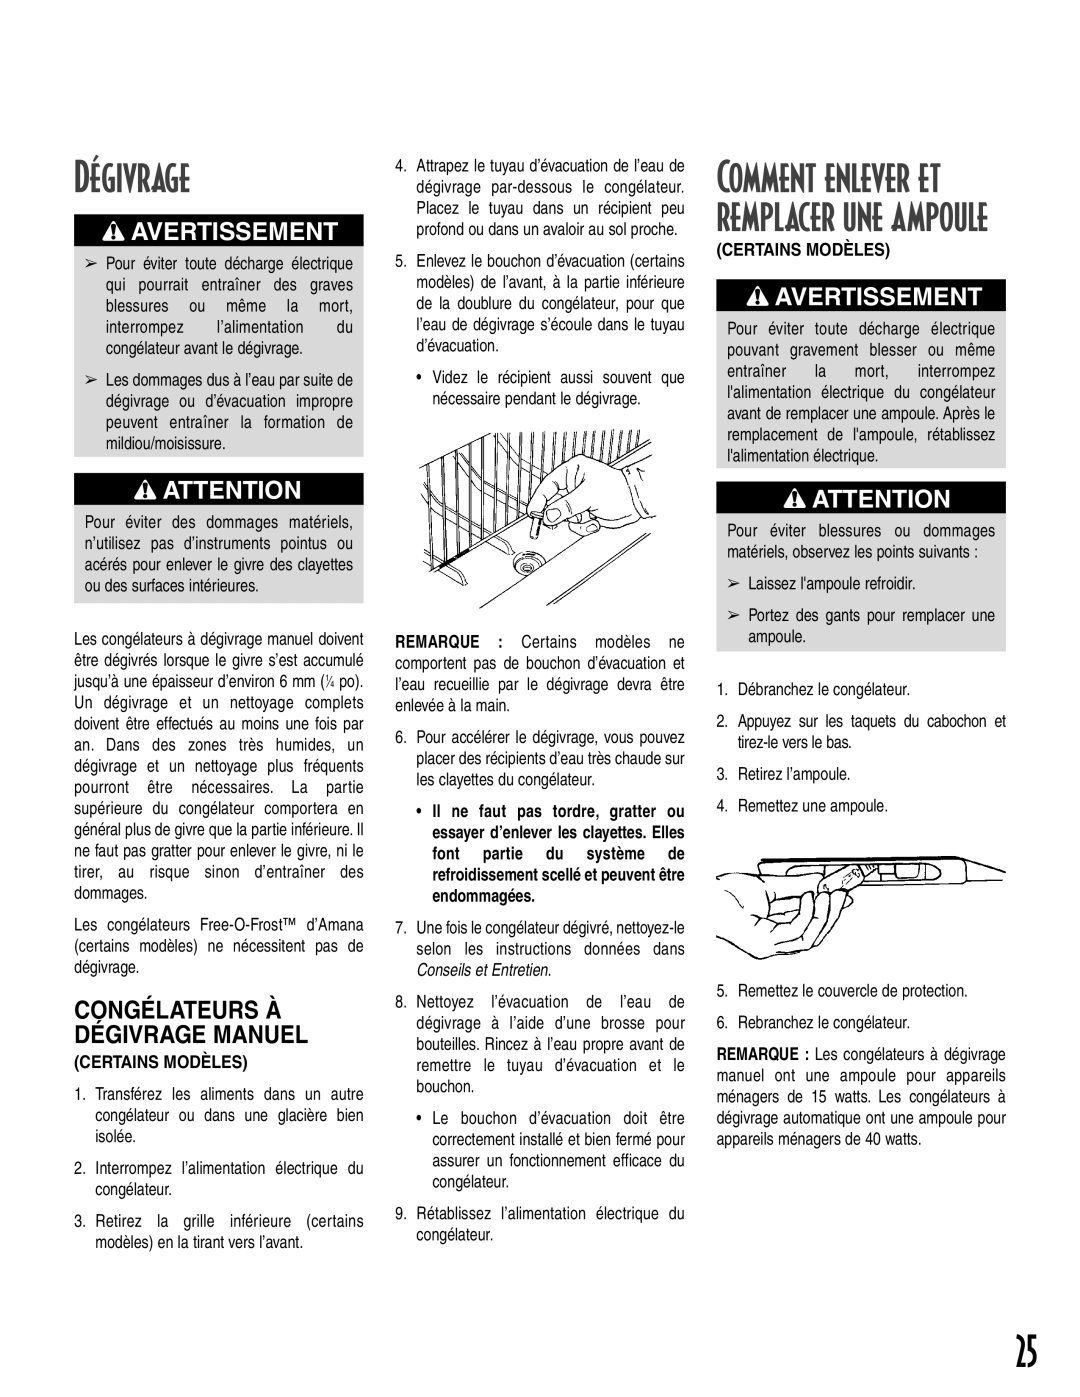 Amana 1-82034-002 owner manual Comment enlever et remplacer une ampoule, Congélateurs À Dégivrage Manuel, Avertissement 